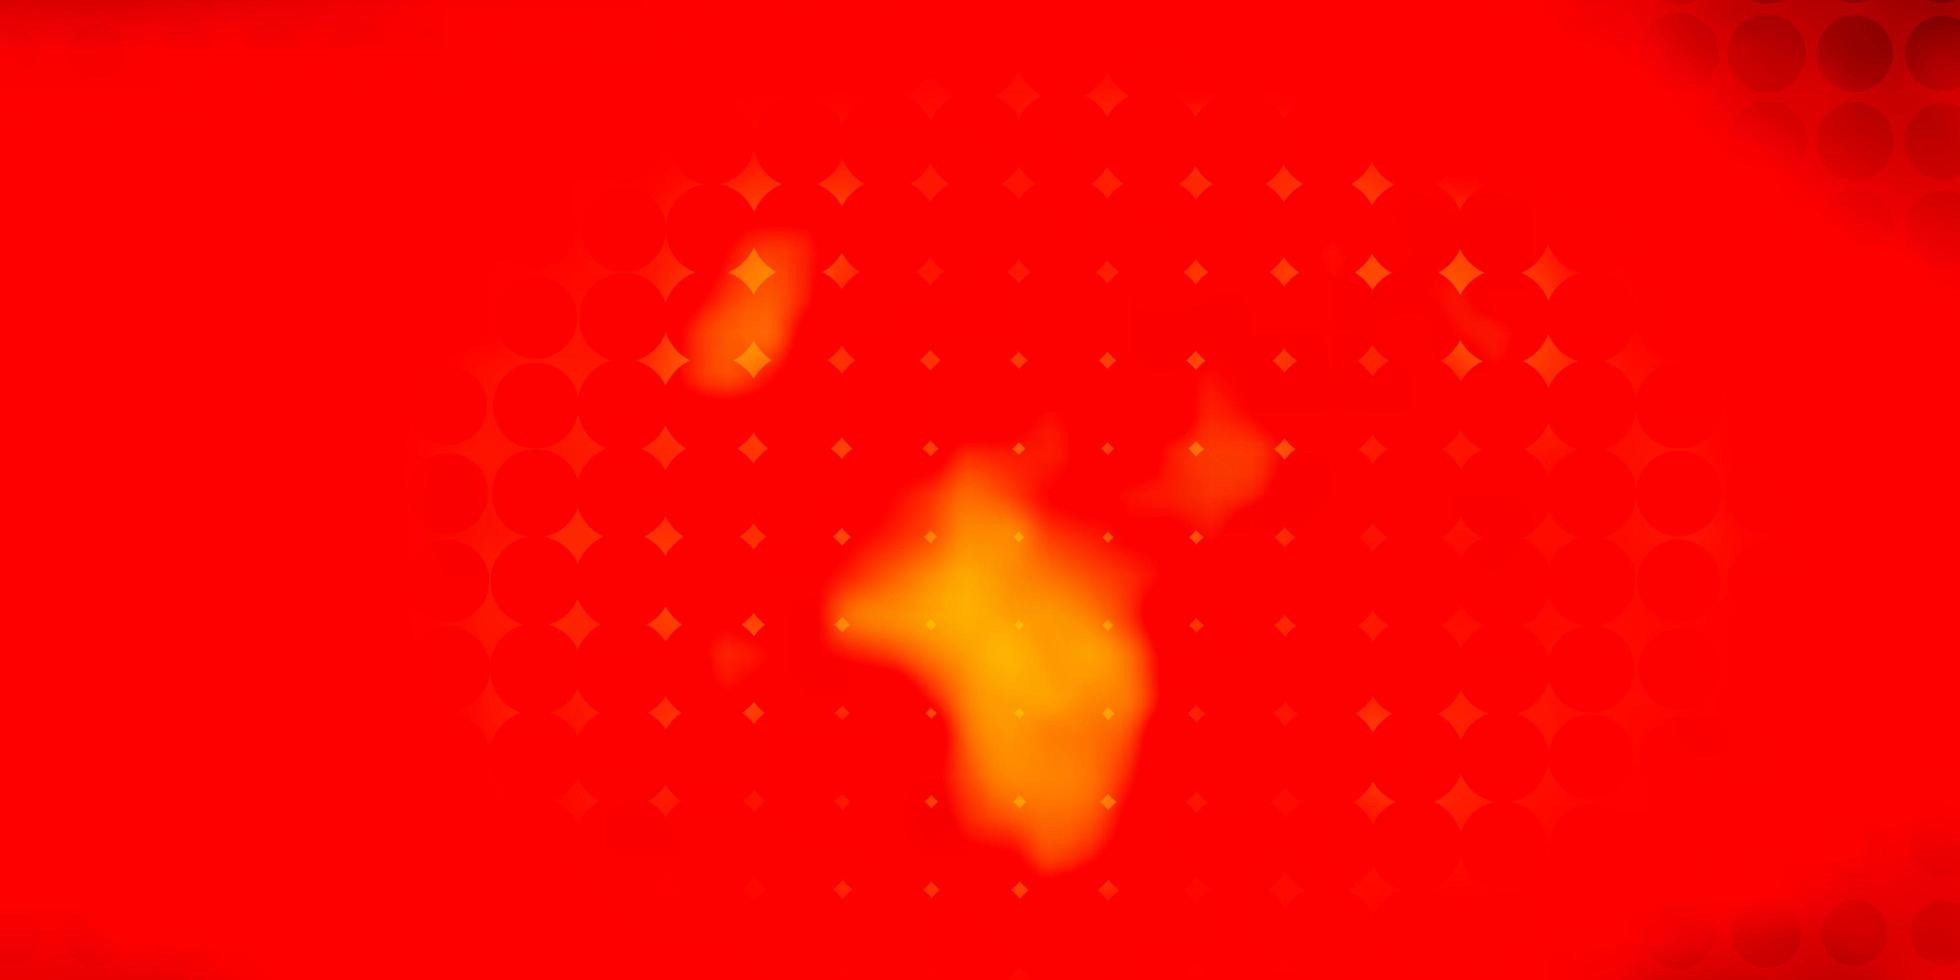 modello vettoriale arancione chiaro con cerchi.